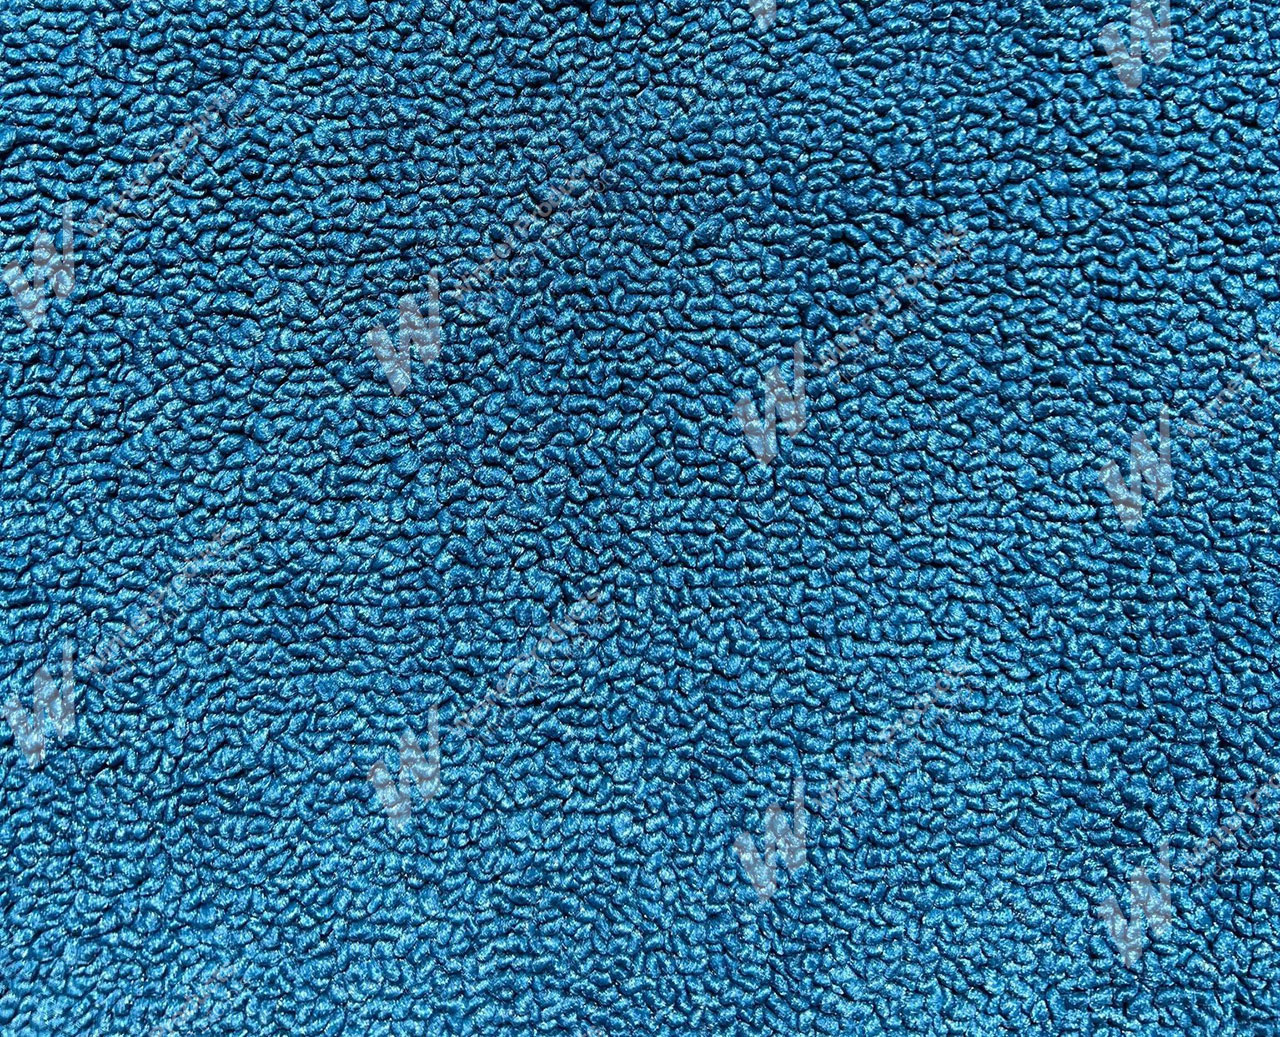 Holden Kingswood HZ Kingswood Ute 23V Light Blue Carpet (Image 1 of 1)